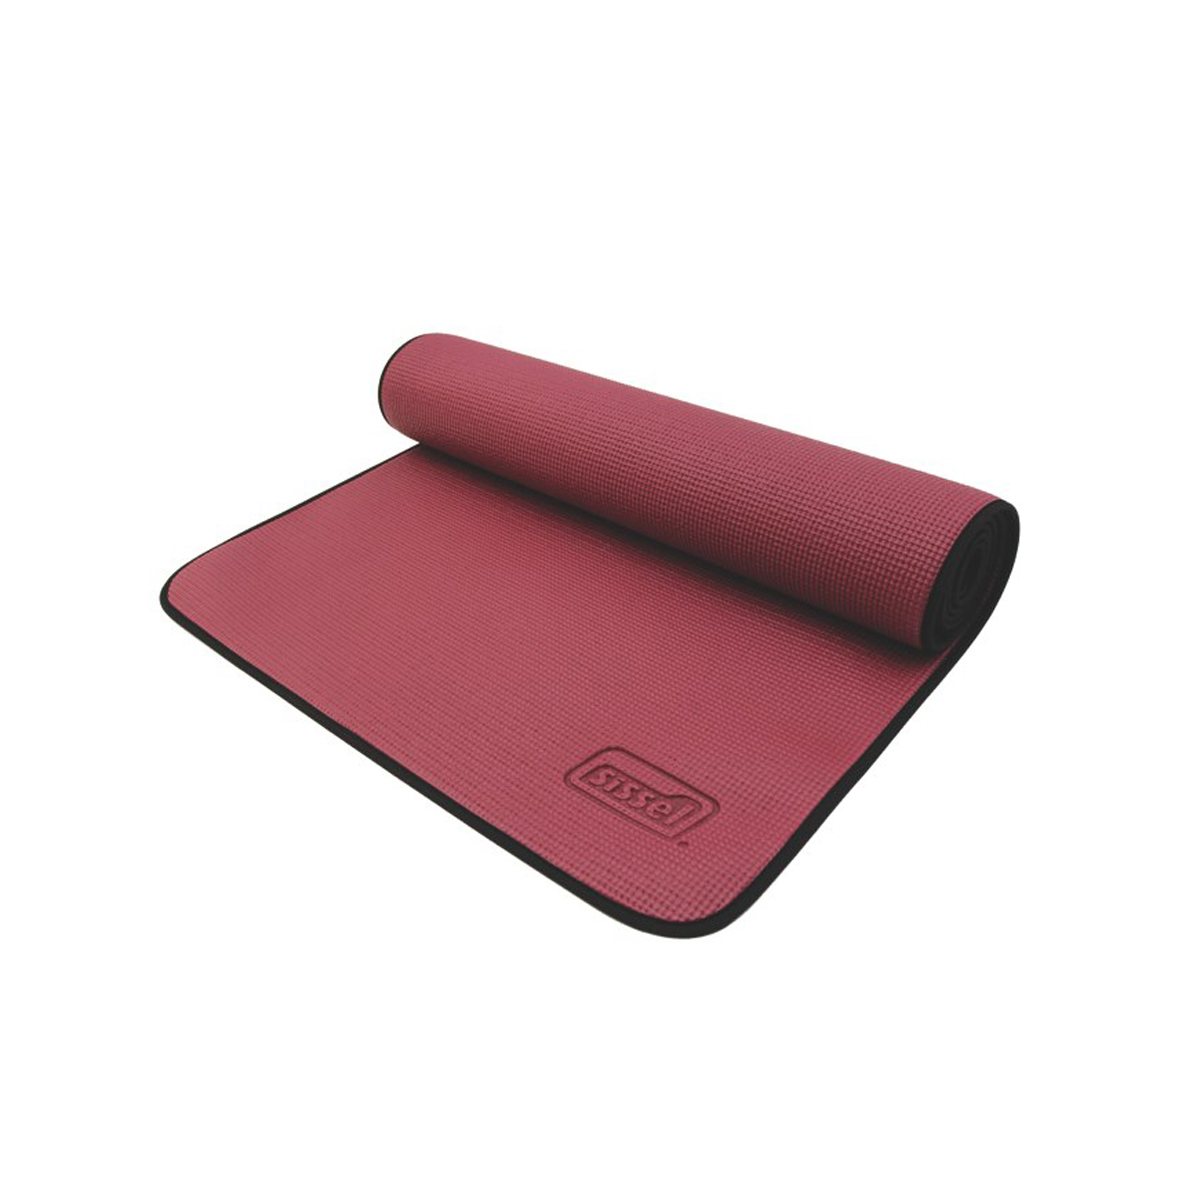 Tappetino Yoga 6mm spessore e Borsa Tracolla Grande Design Non Slip Pilates stampa rosso 